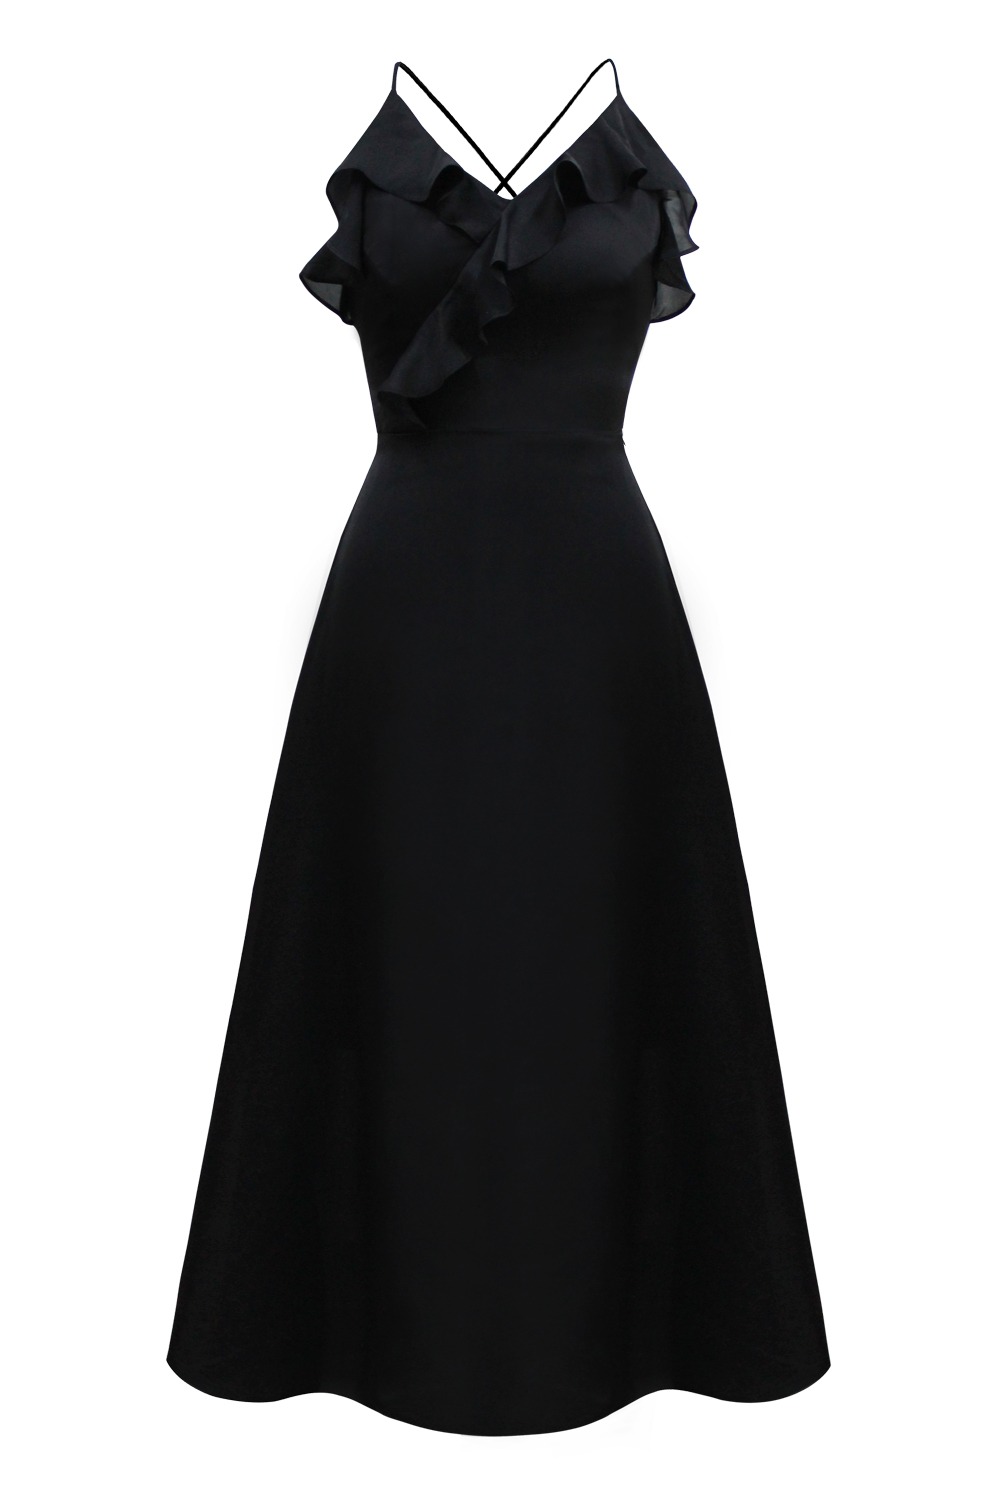 Alexis silky slip dress (Black)